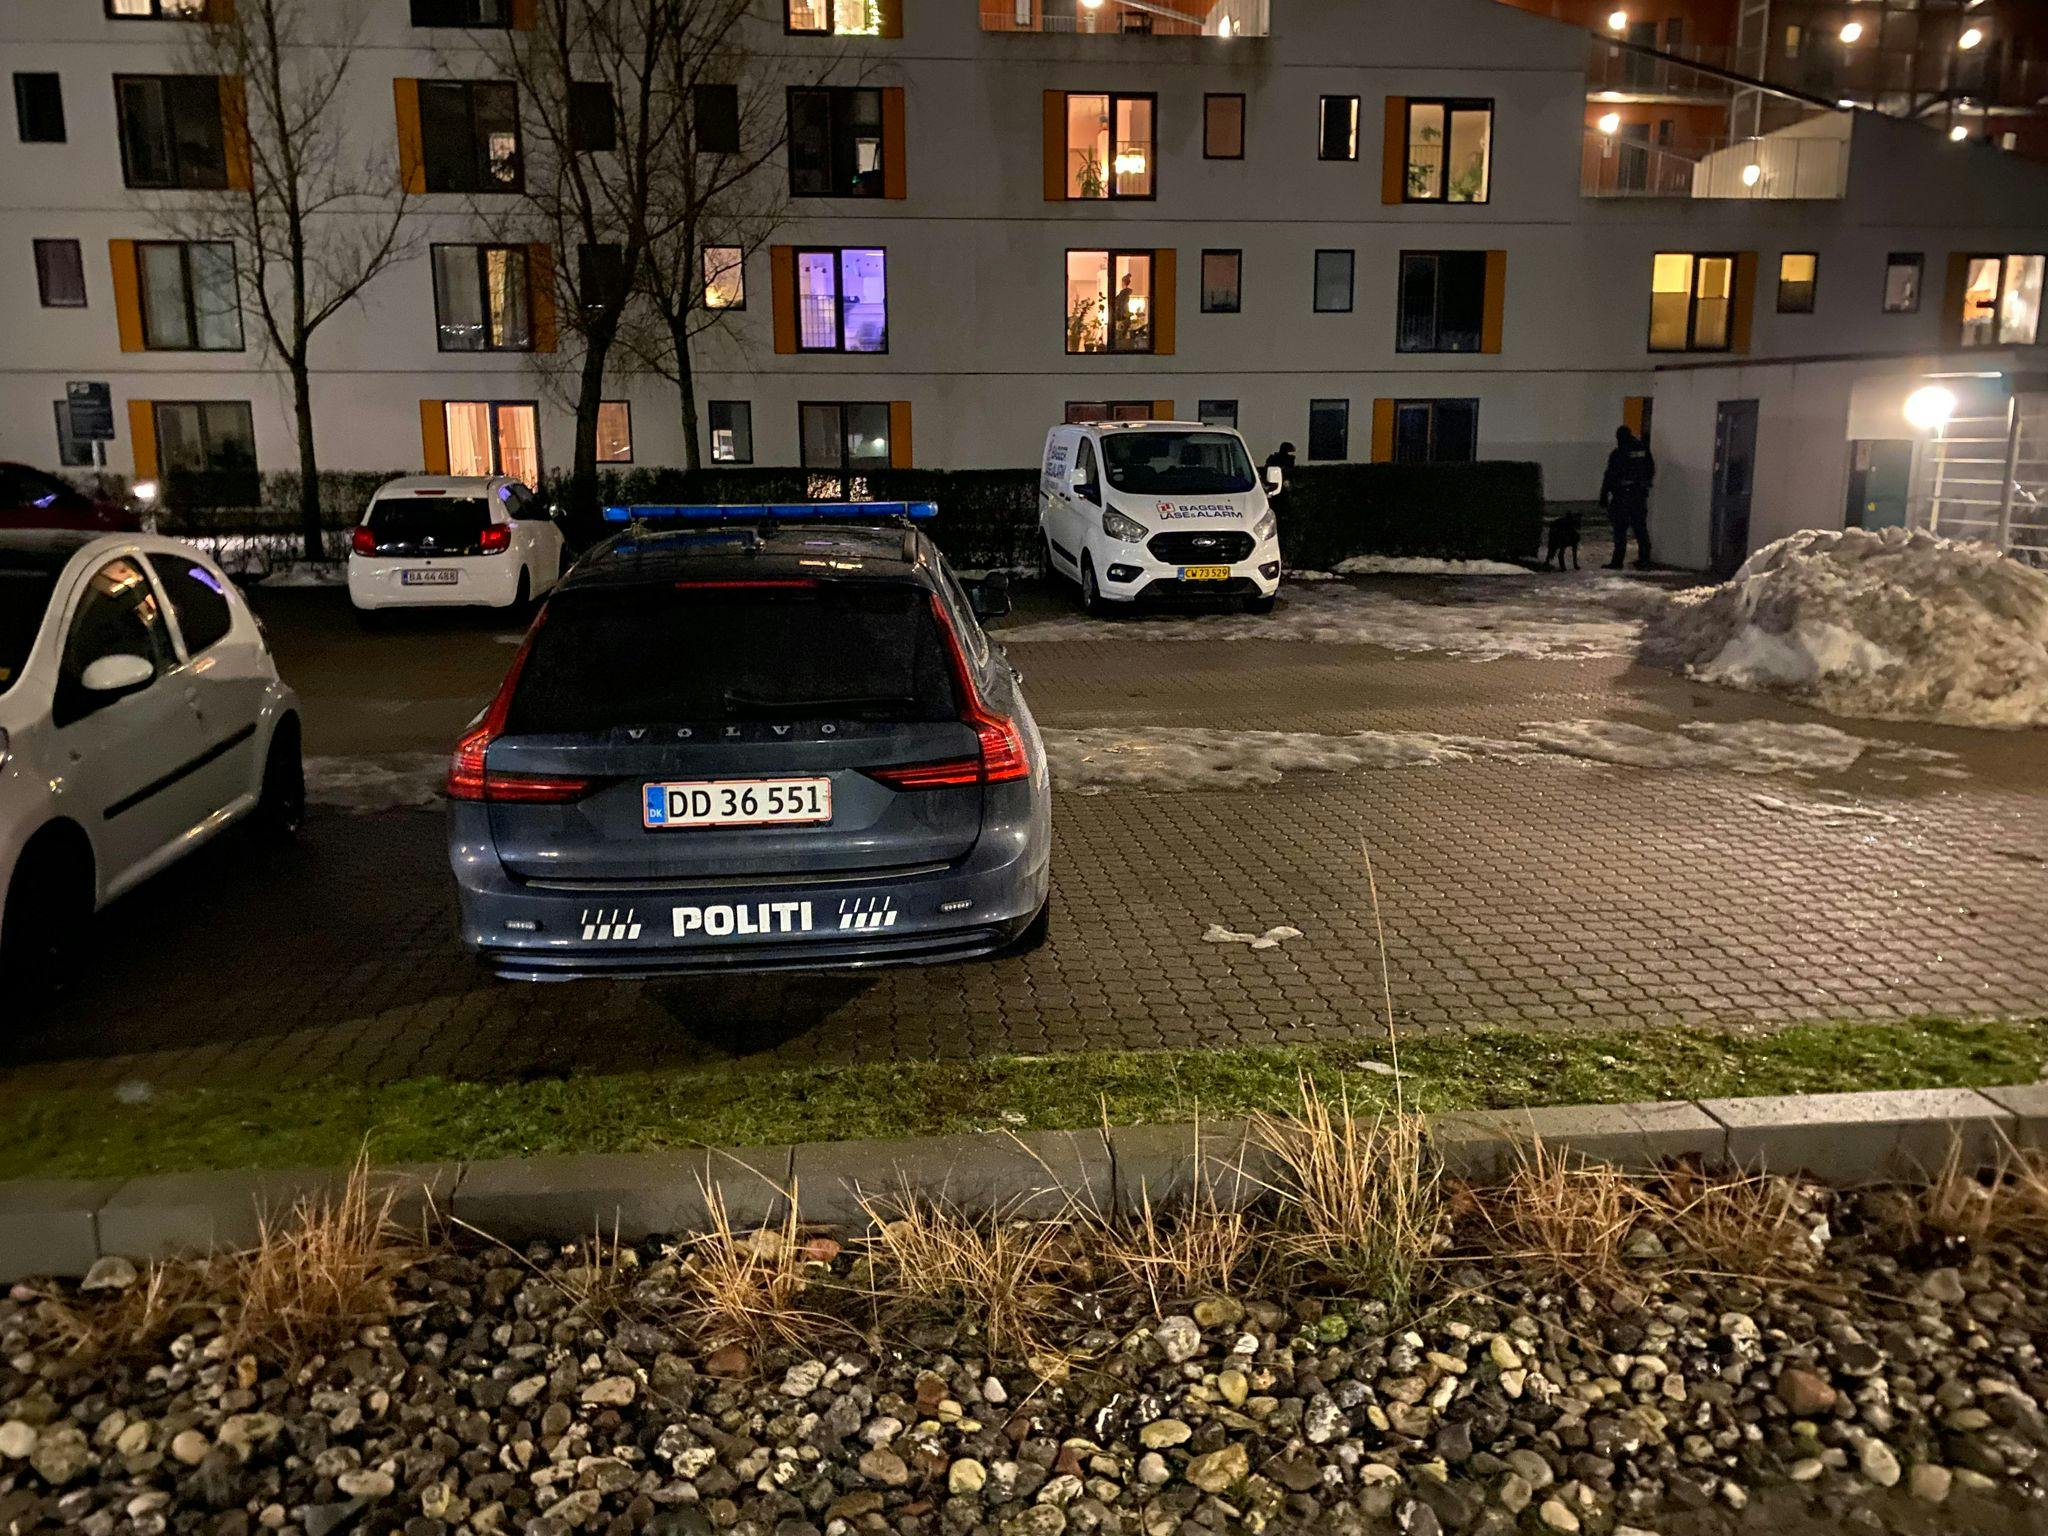 Politiets indsatsstyrke rykkede lørdag ud til Roskilde, efter der var indløbet en anmeldelse om trusler og mulig besiddelse af et skydevåben.